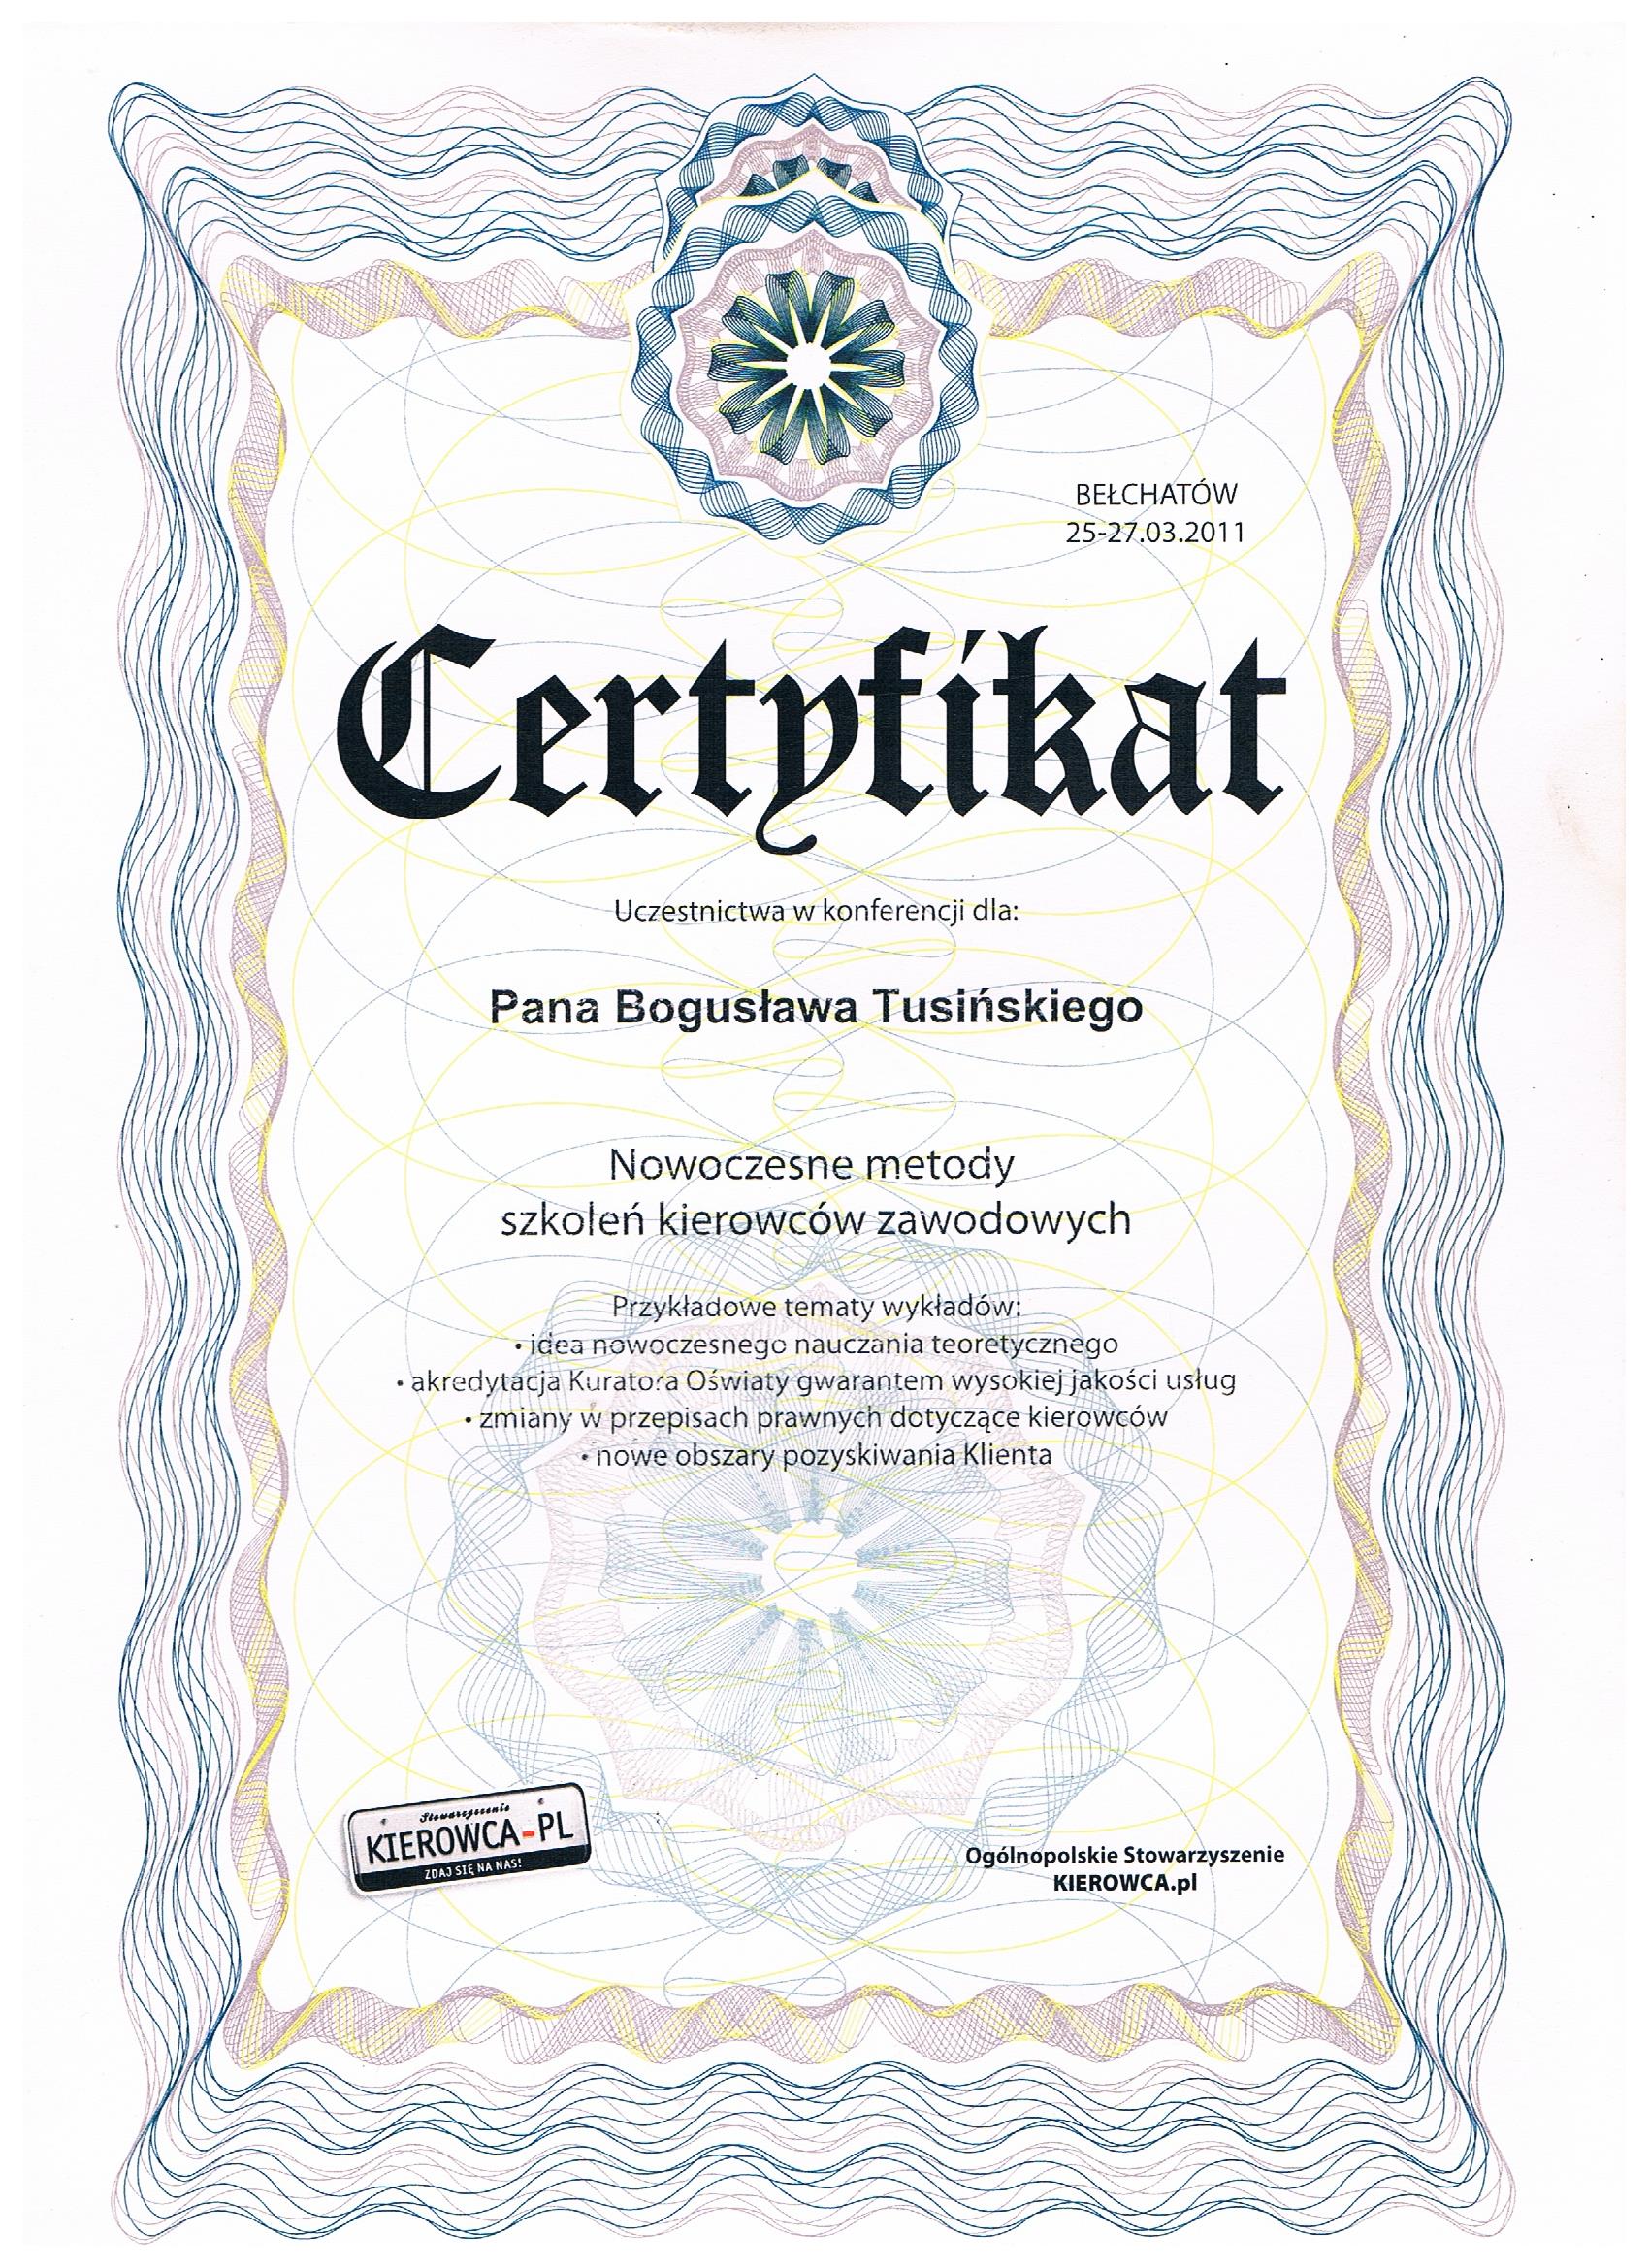 Certyfikat Ośrodka Szkolenia Kierowców w Bielawie